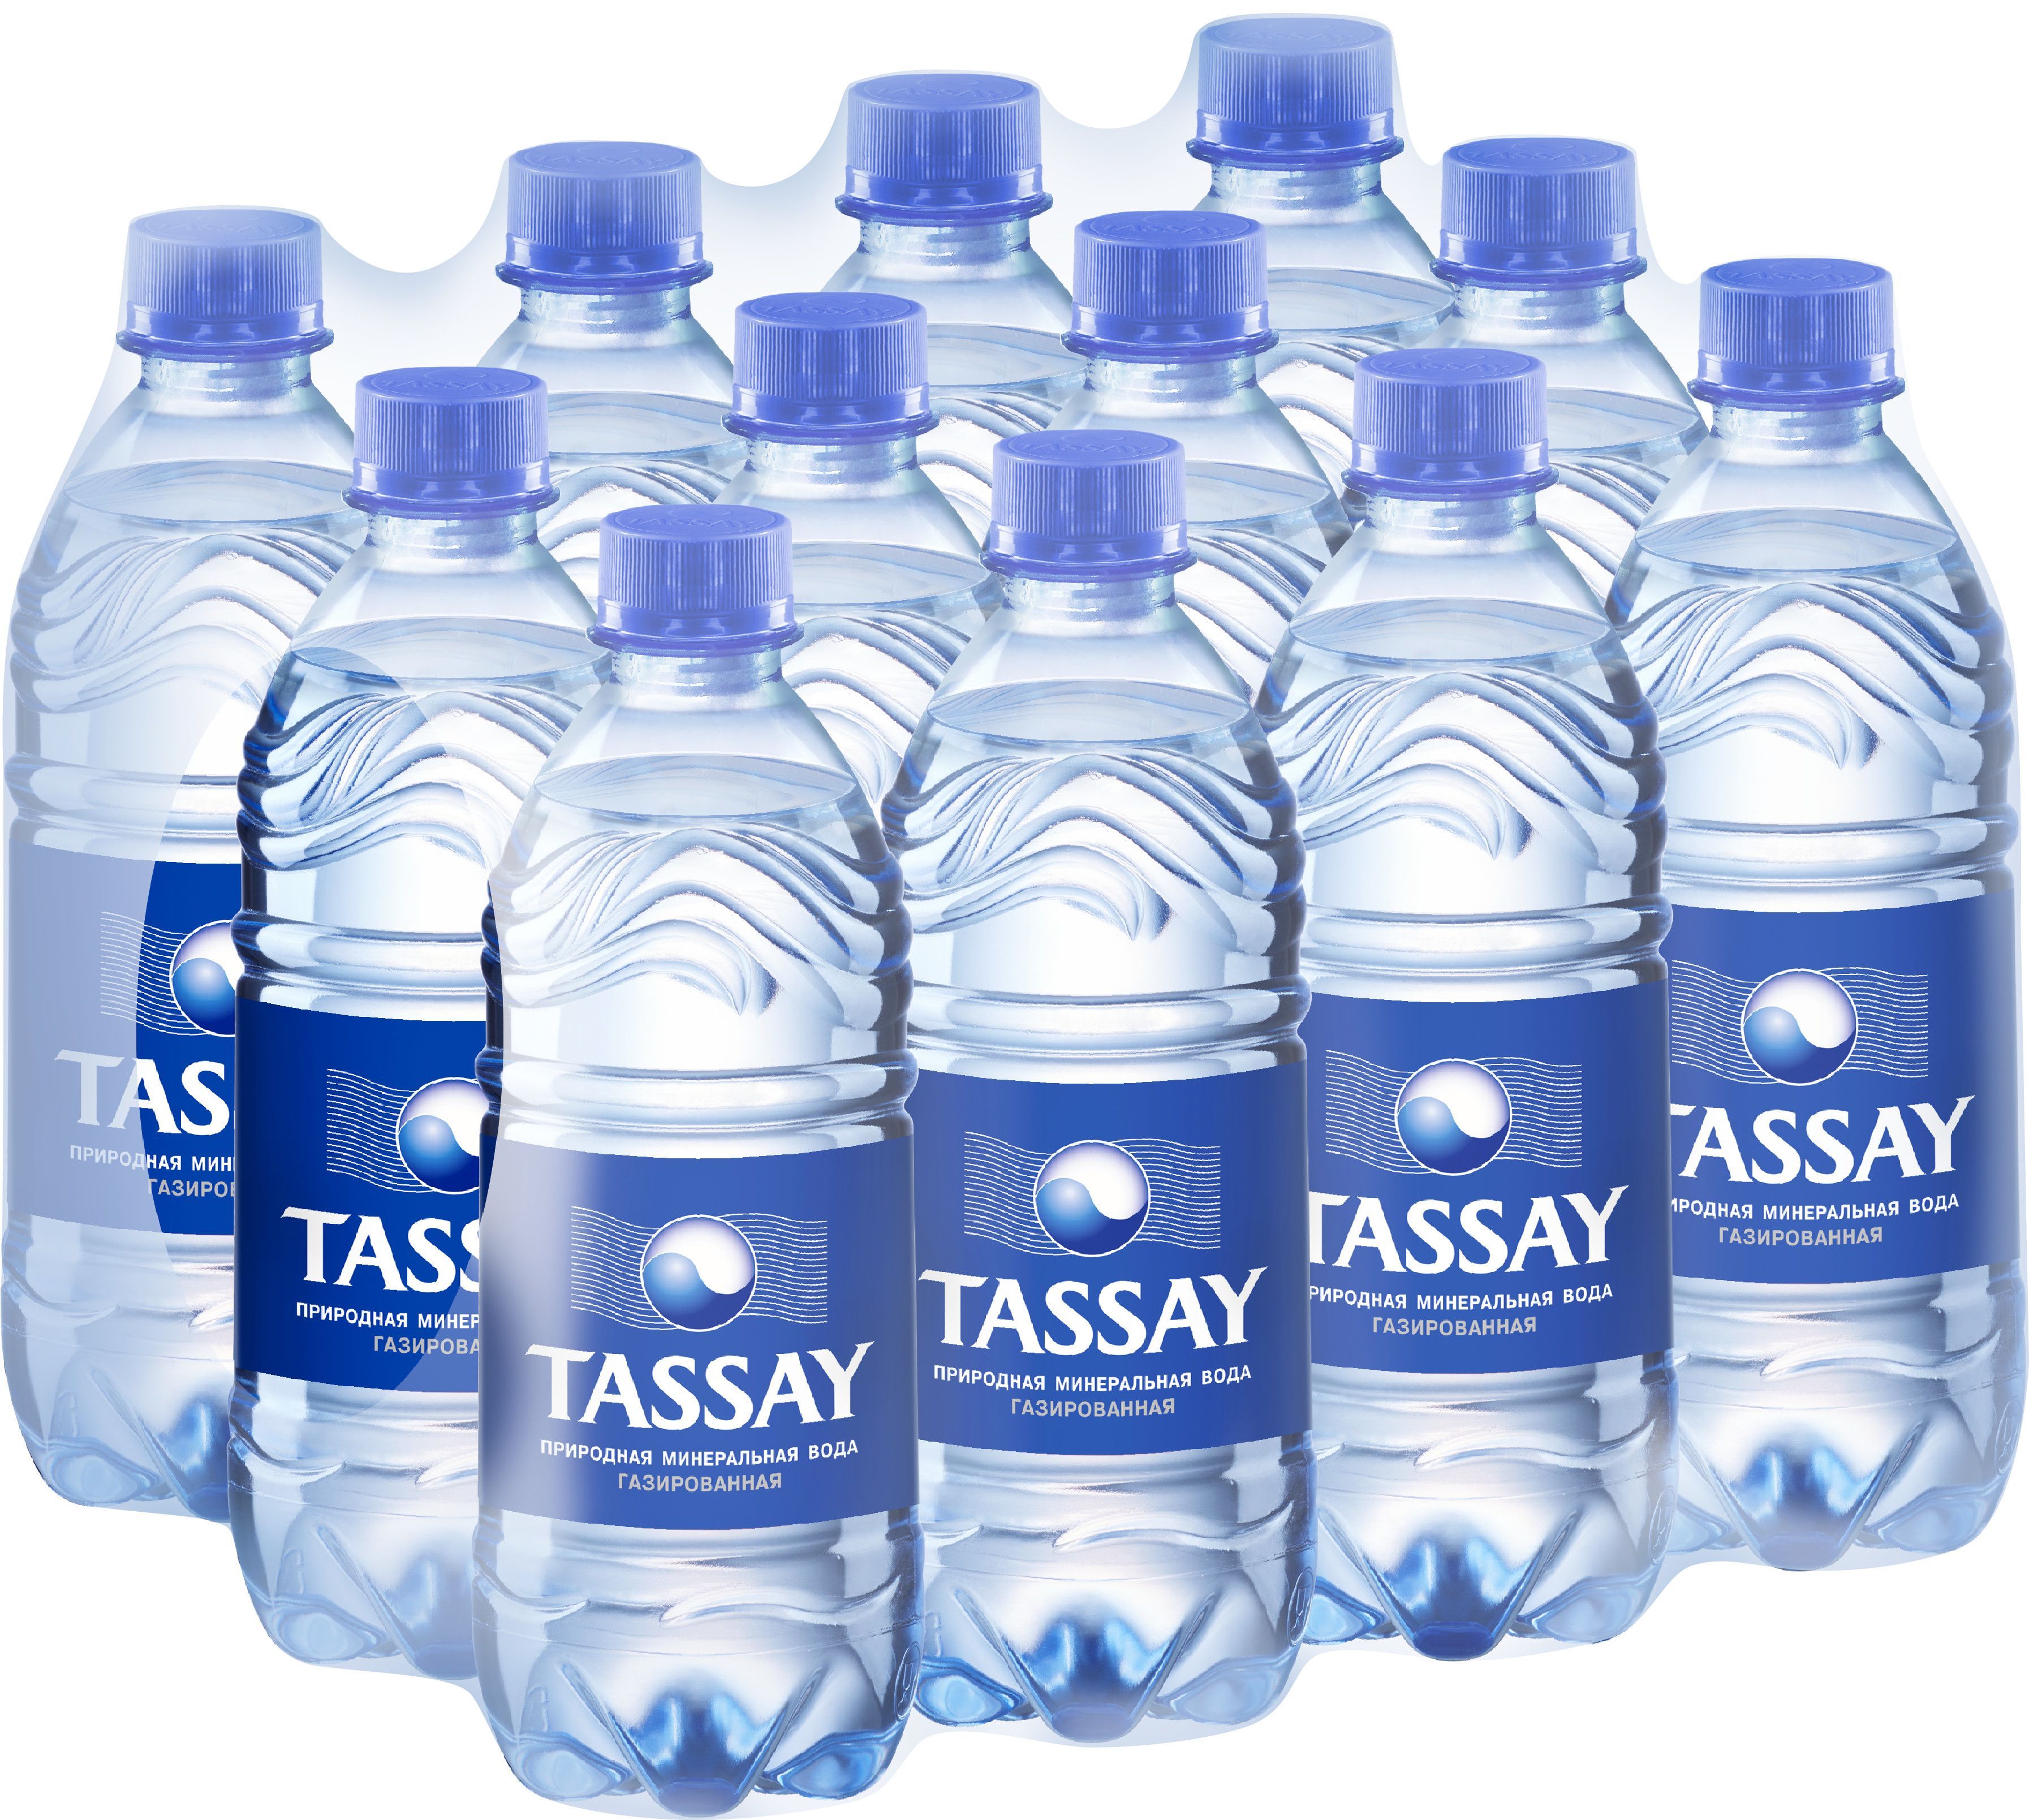 Минеральная вода Tassay. Тассай 0.5 ПЭТ. Tassay вода 0.5. Тассай вода ПЭТ 0.5.